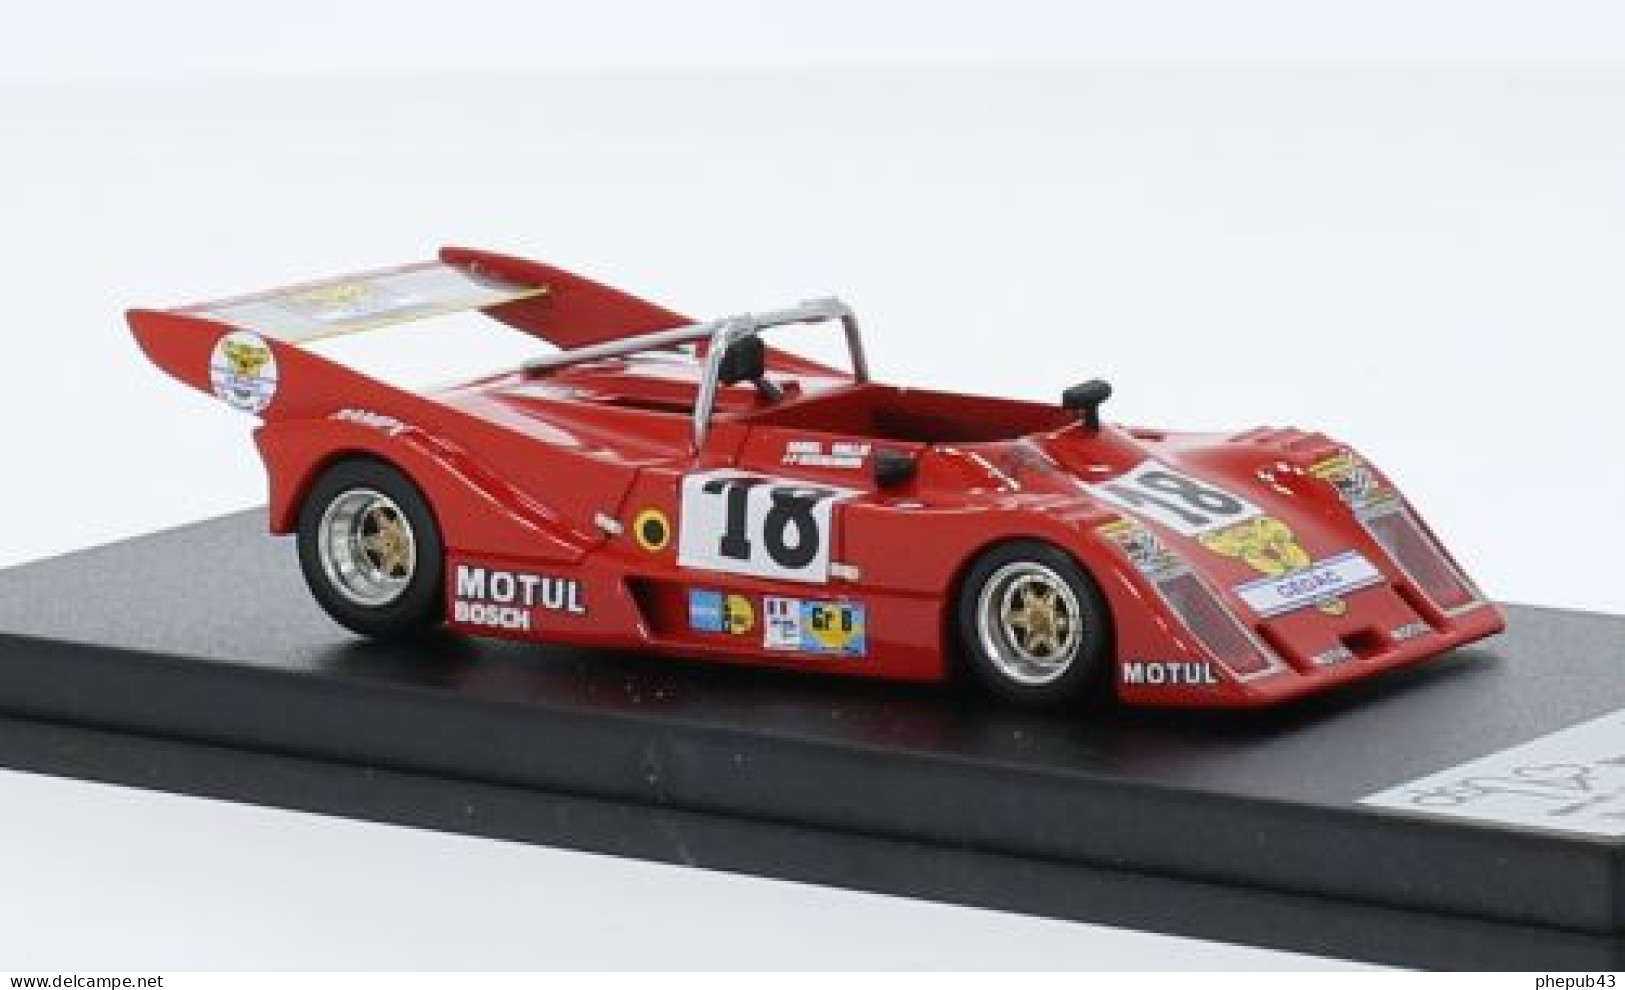 Cheetah G601 - 24h Le Mans 1979 #18 - D. Brillat/J.-P. Aeschlimann - Troféu - Trofeu